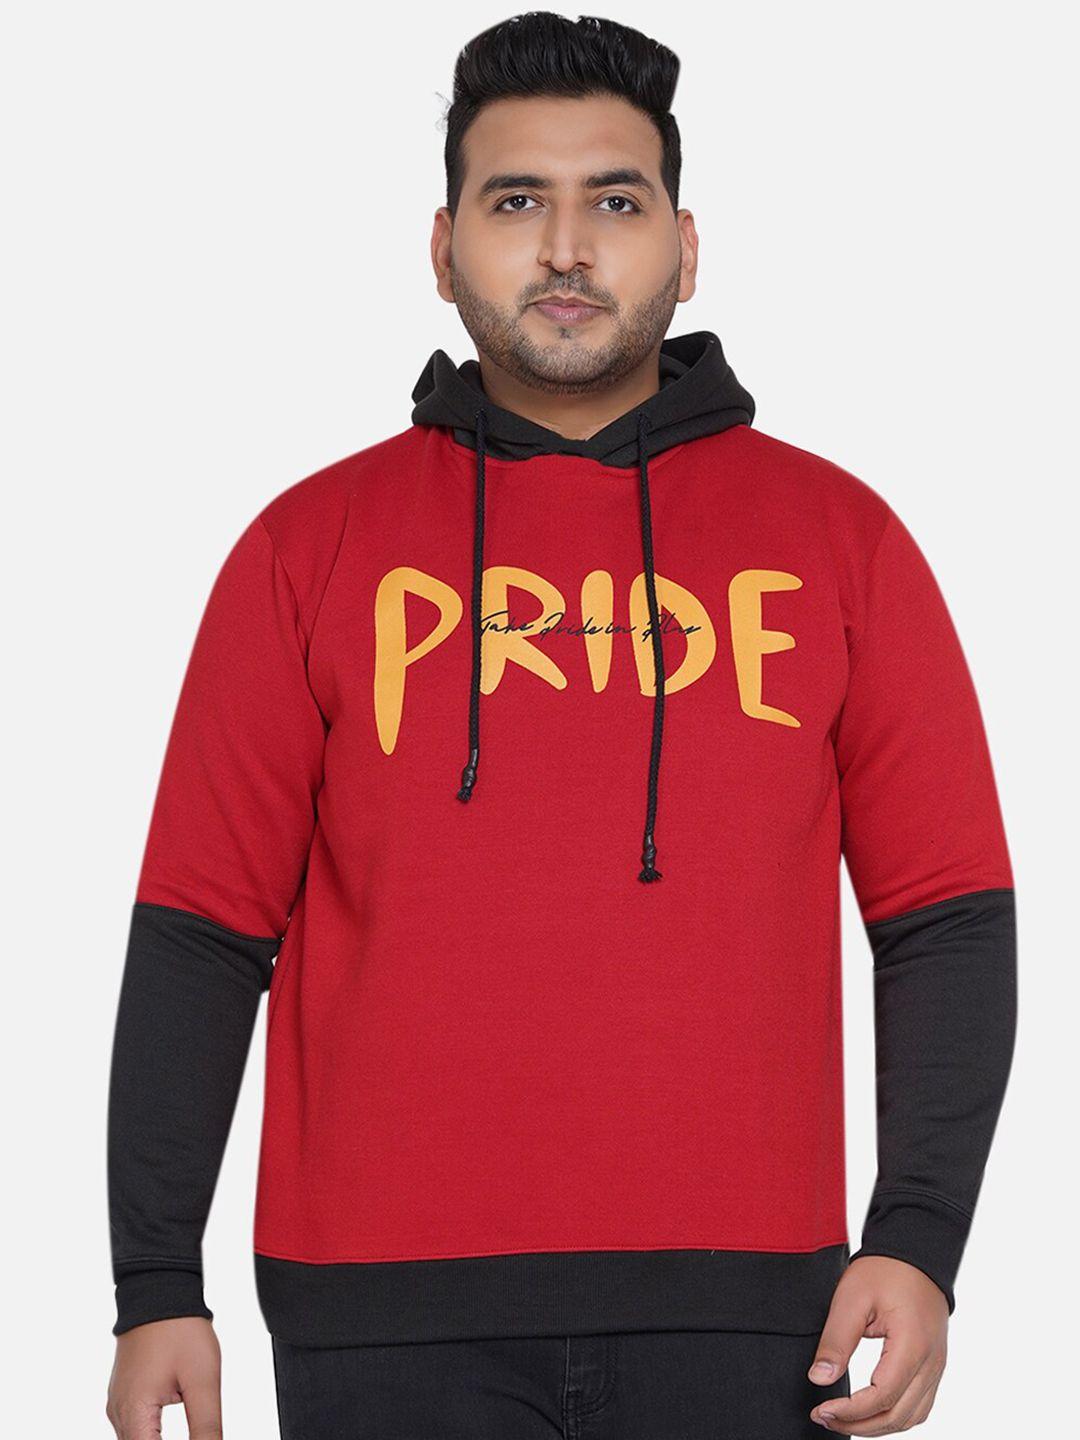 john pride men red printed hooded sweatshirt